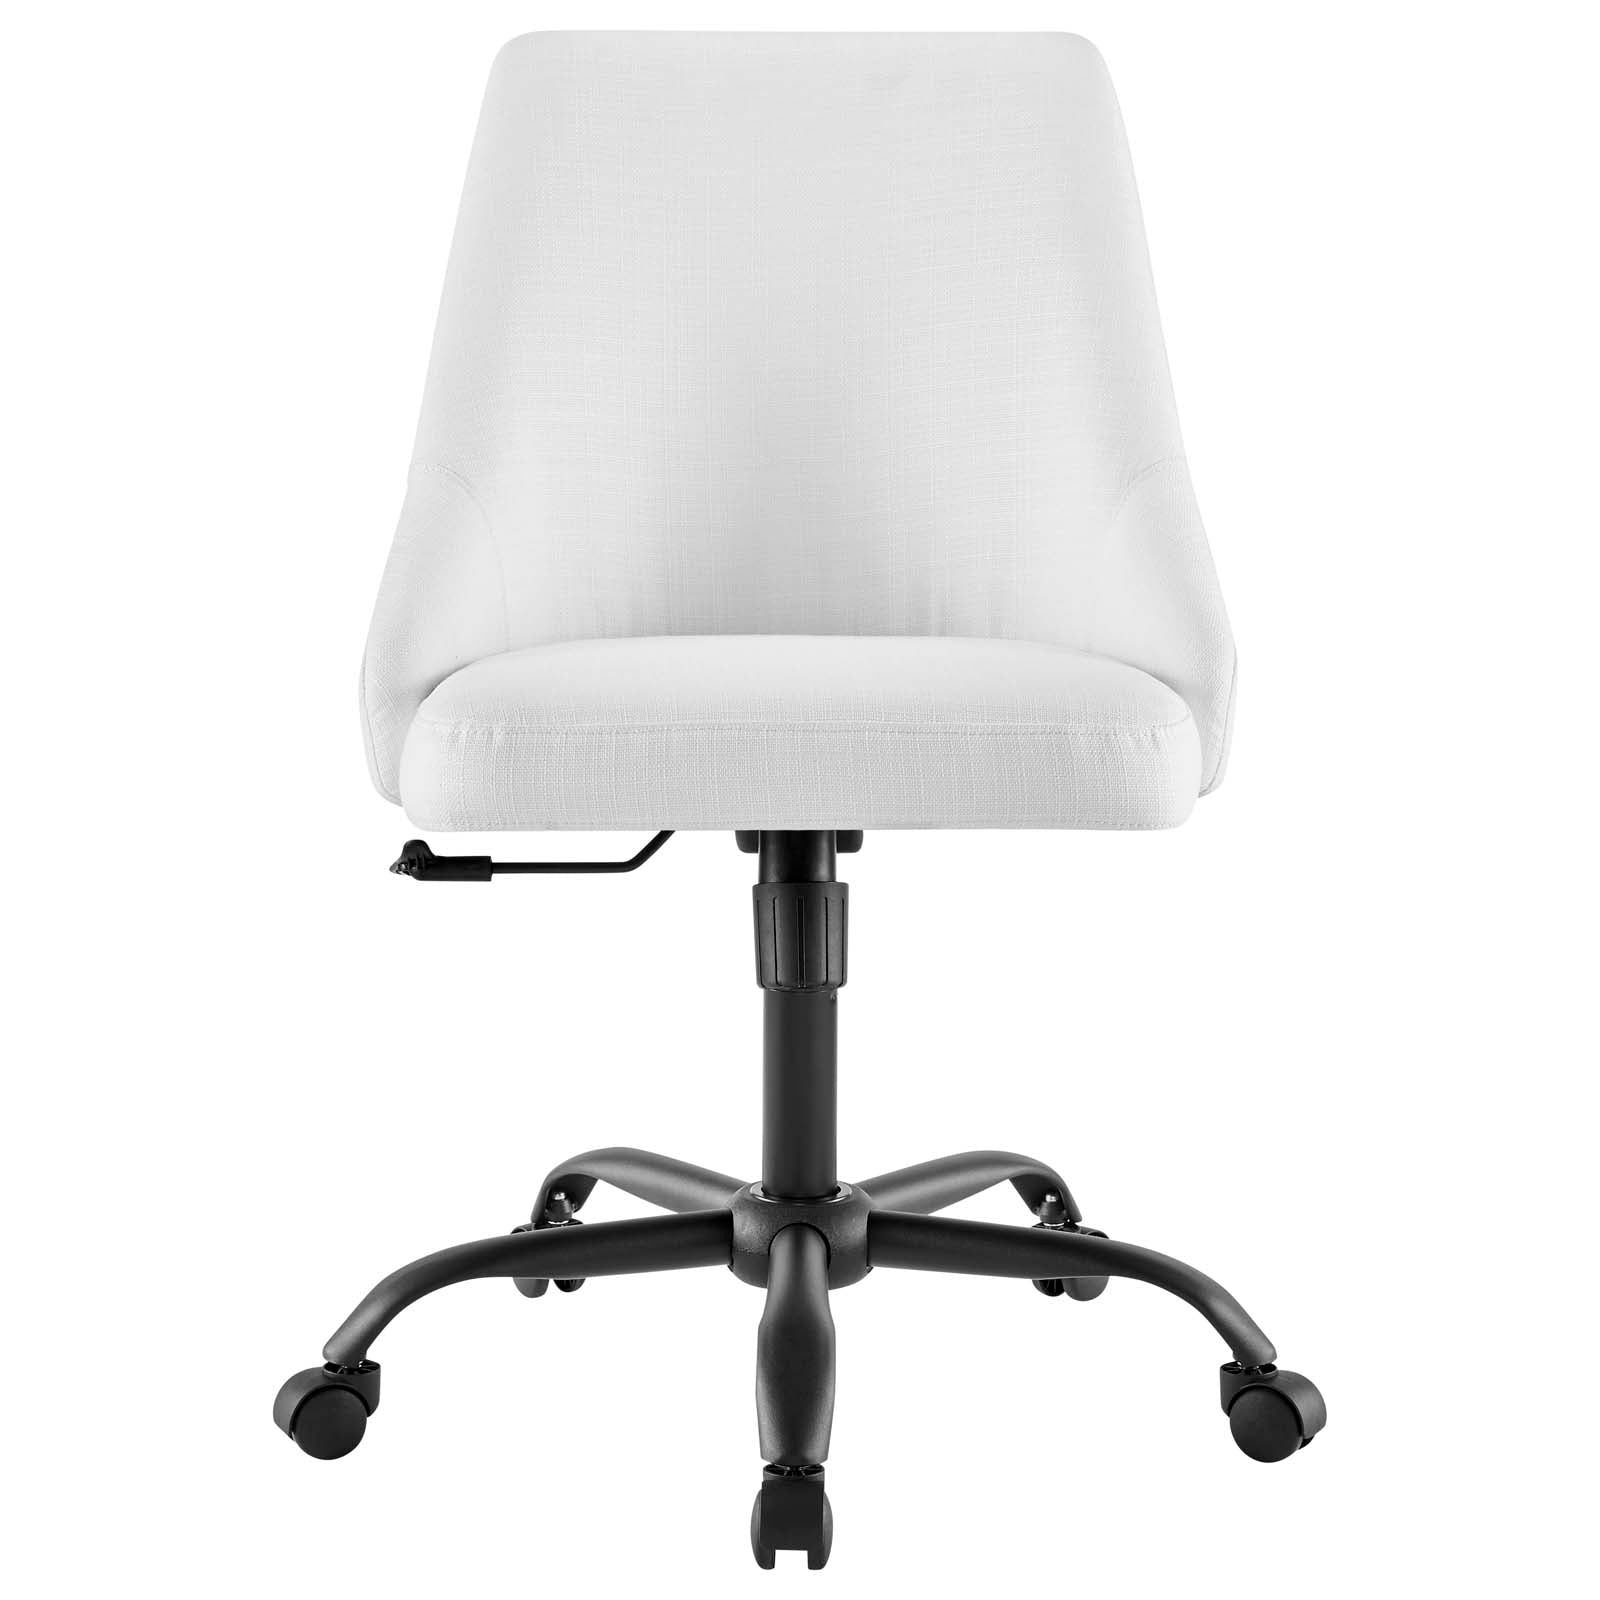 Designate Swivel Upholstered Office Chair - East Shore Modern Home Furnishings